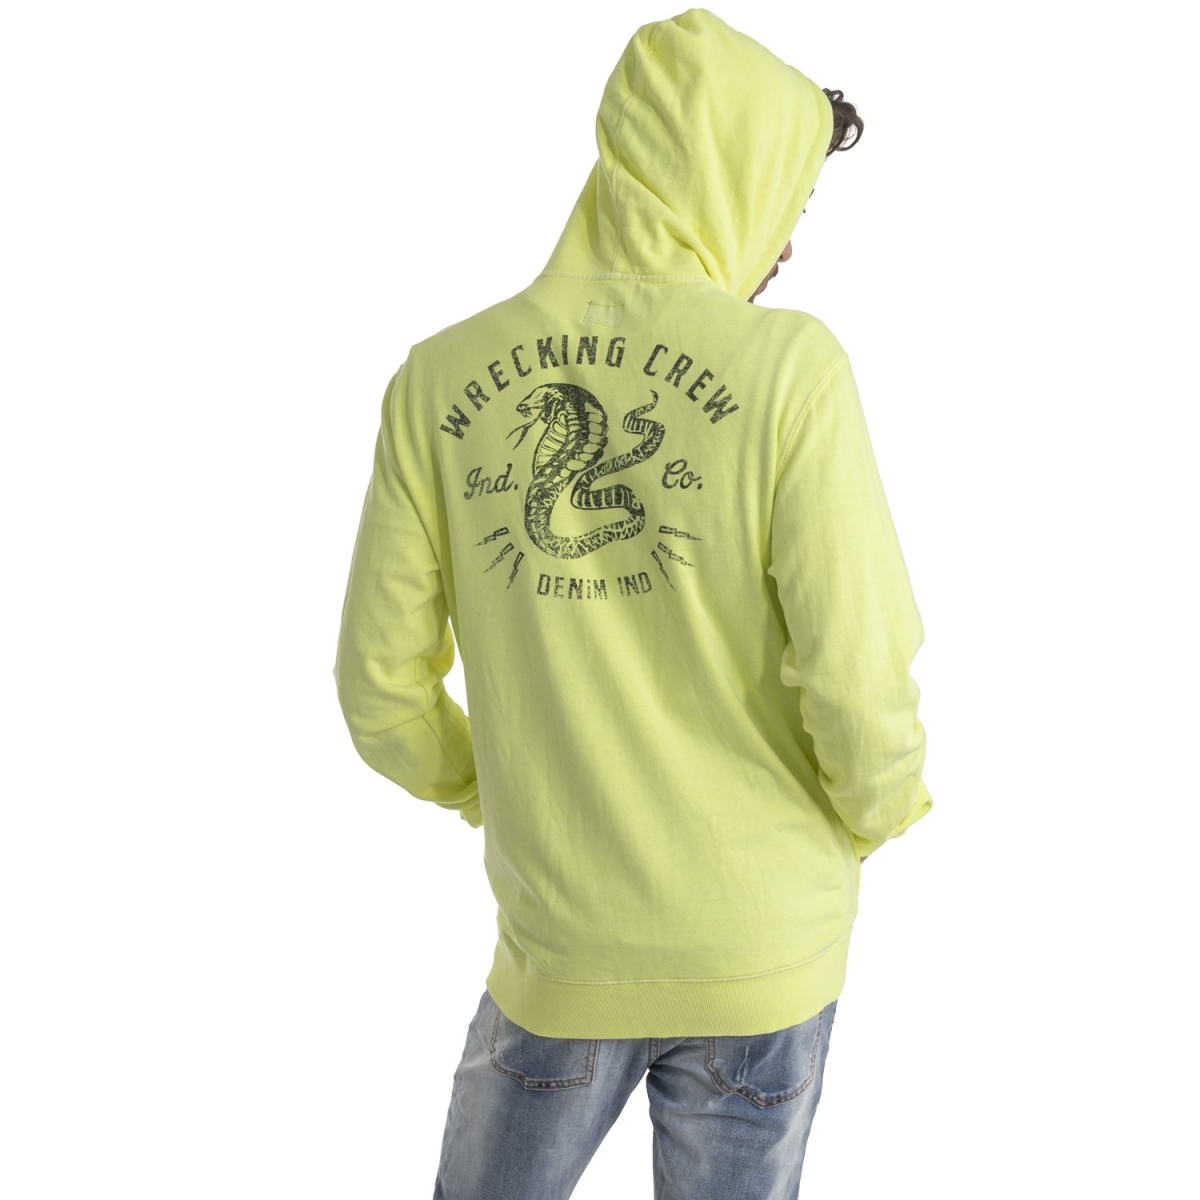 clothing Sweatshirts men Felpa con cappuccio LPLK947 LANDEK PARK Cafedelmar Shop